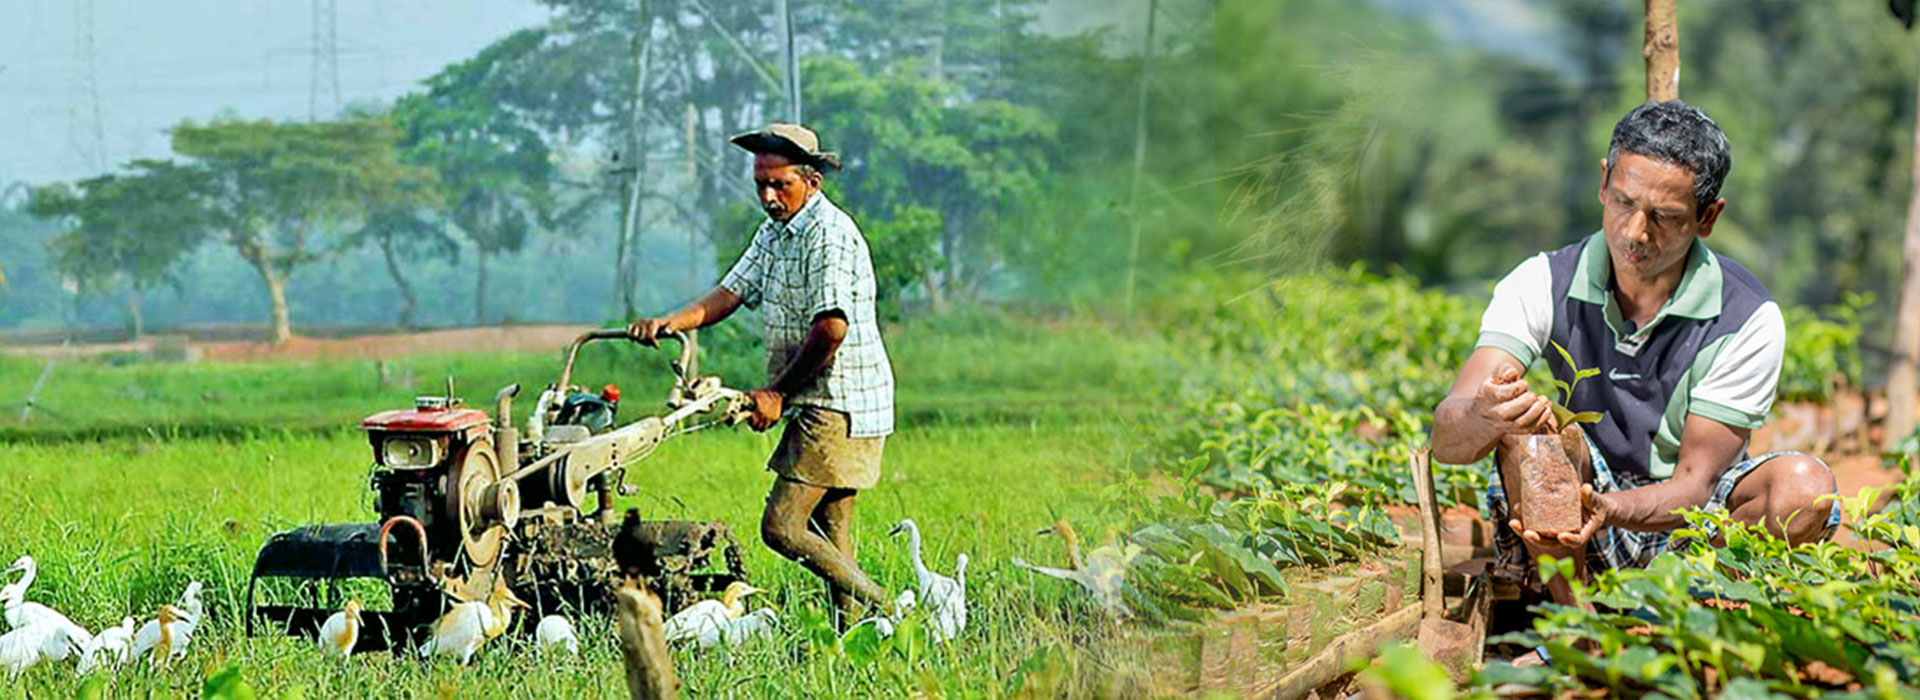 Sri Lanka to establish task force for agricultural modernization